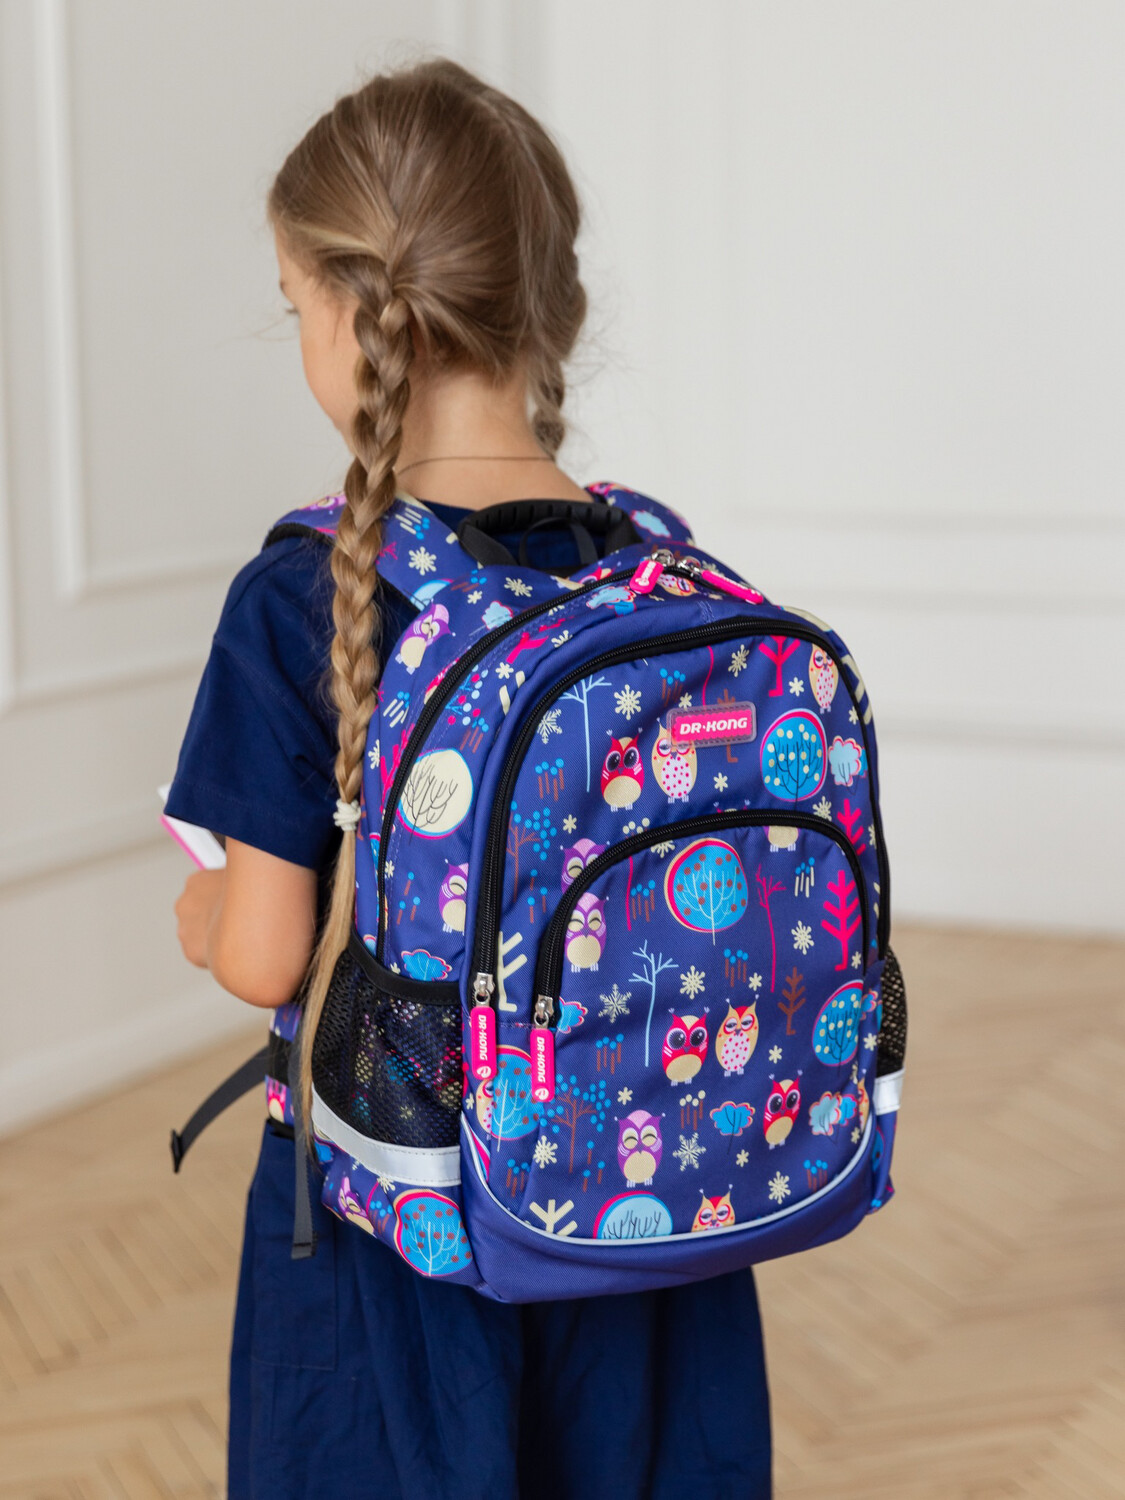 Школьный рюкзак DR.KONG Z 1121 для девочек на рост 110-130 см